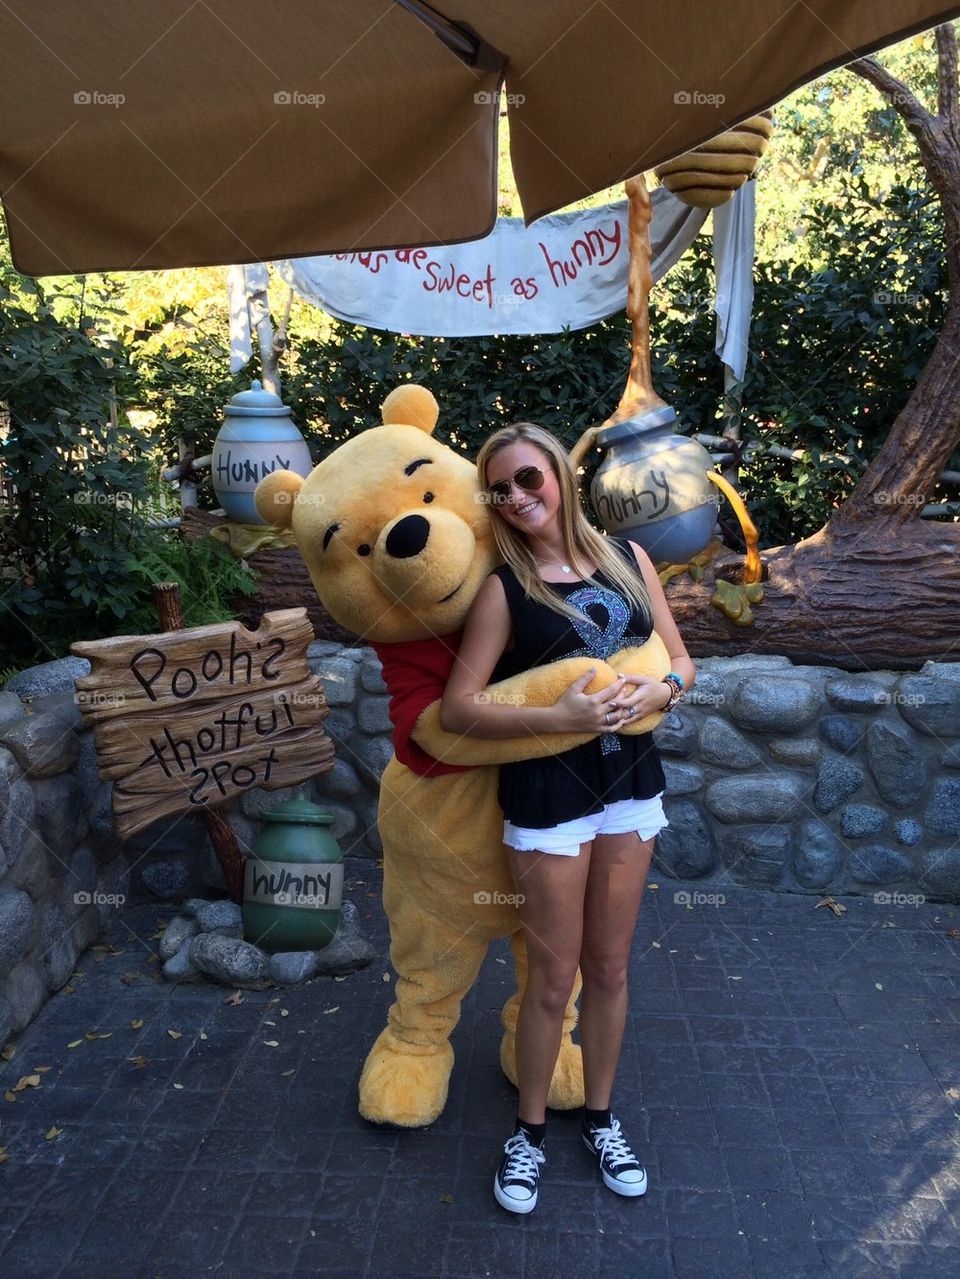 Fun with Pooh Bear